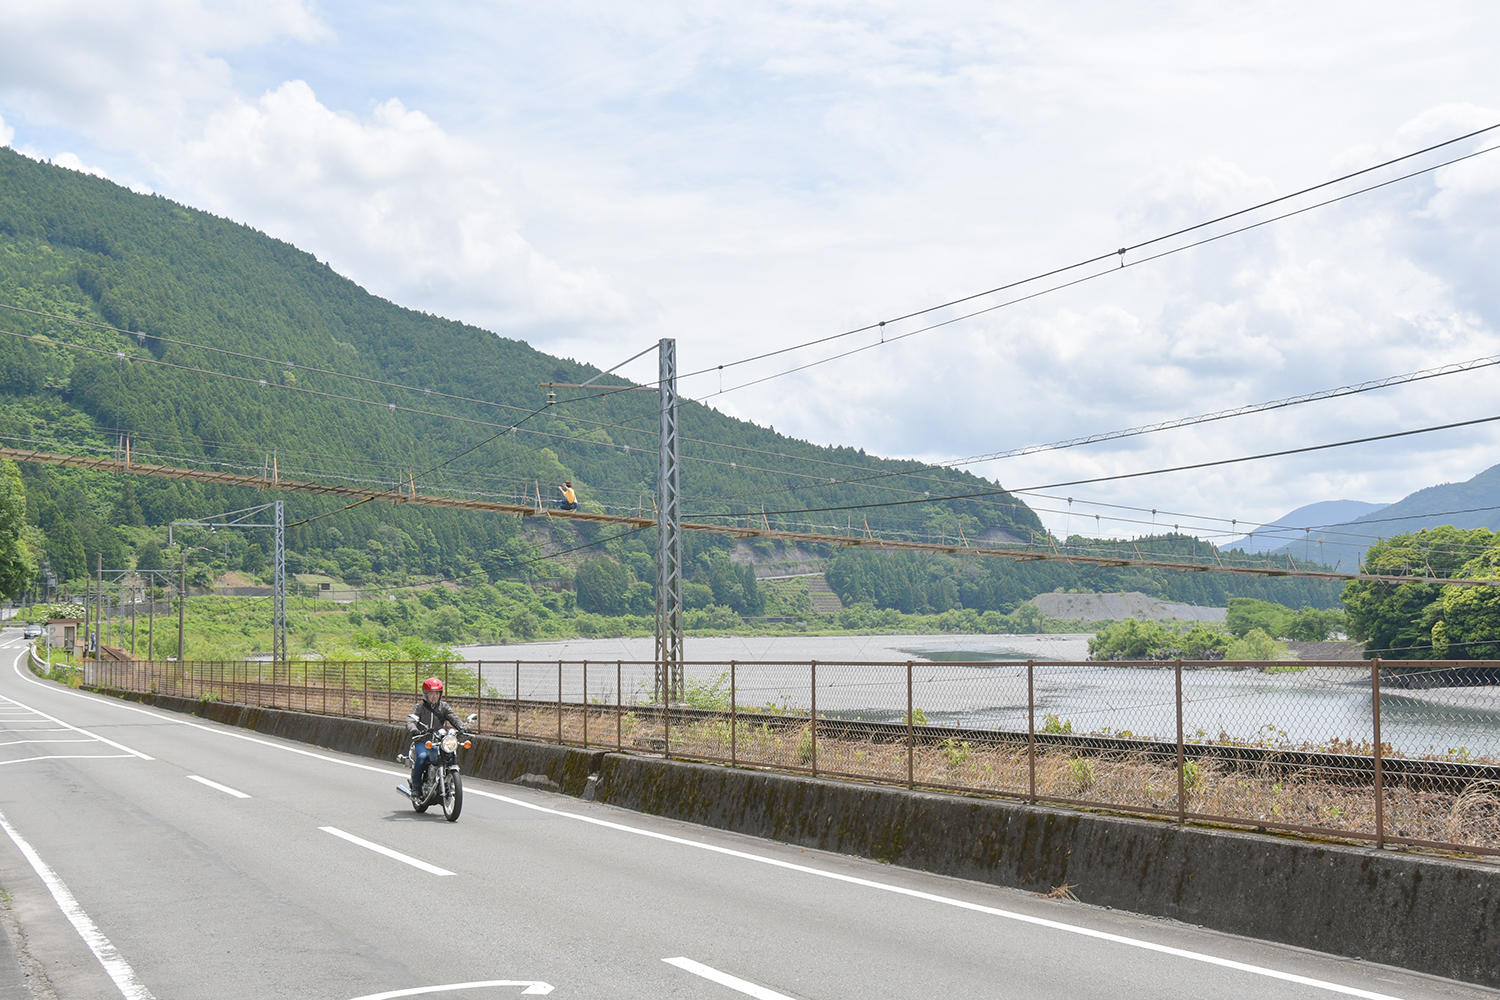 そういえば、YSP静岡東・中根店長が「道路の上に吊り橋がかかっていますよ」って話してくださっていたことを思い出しました。